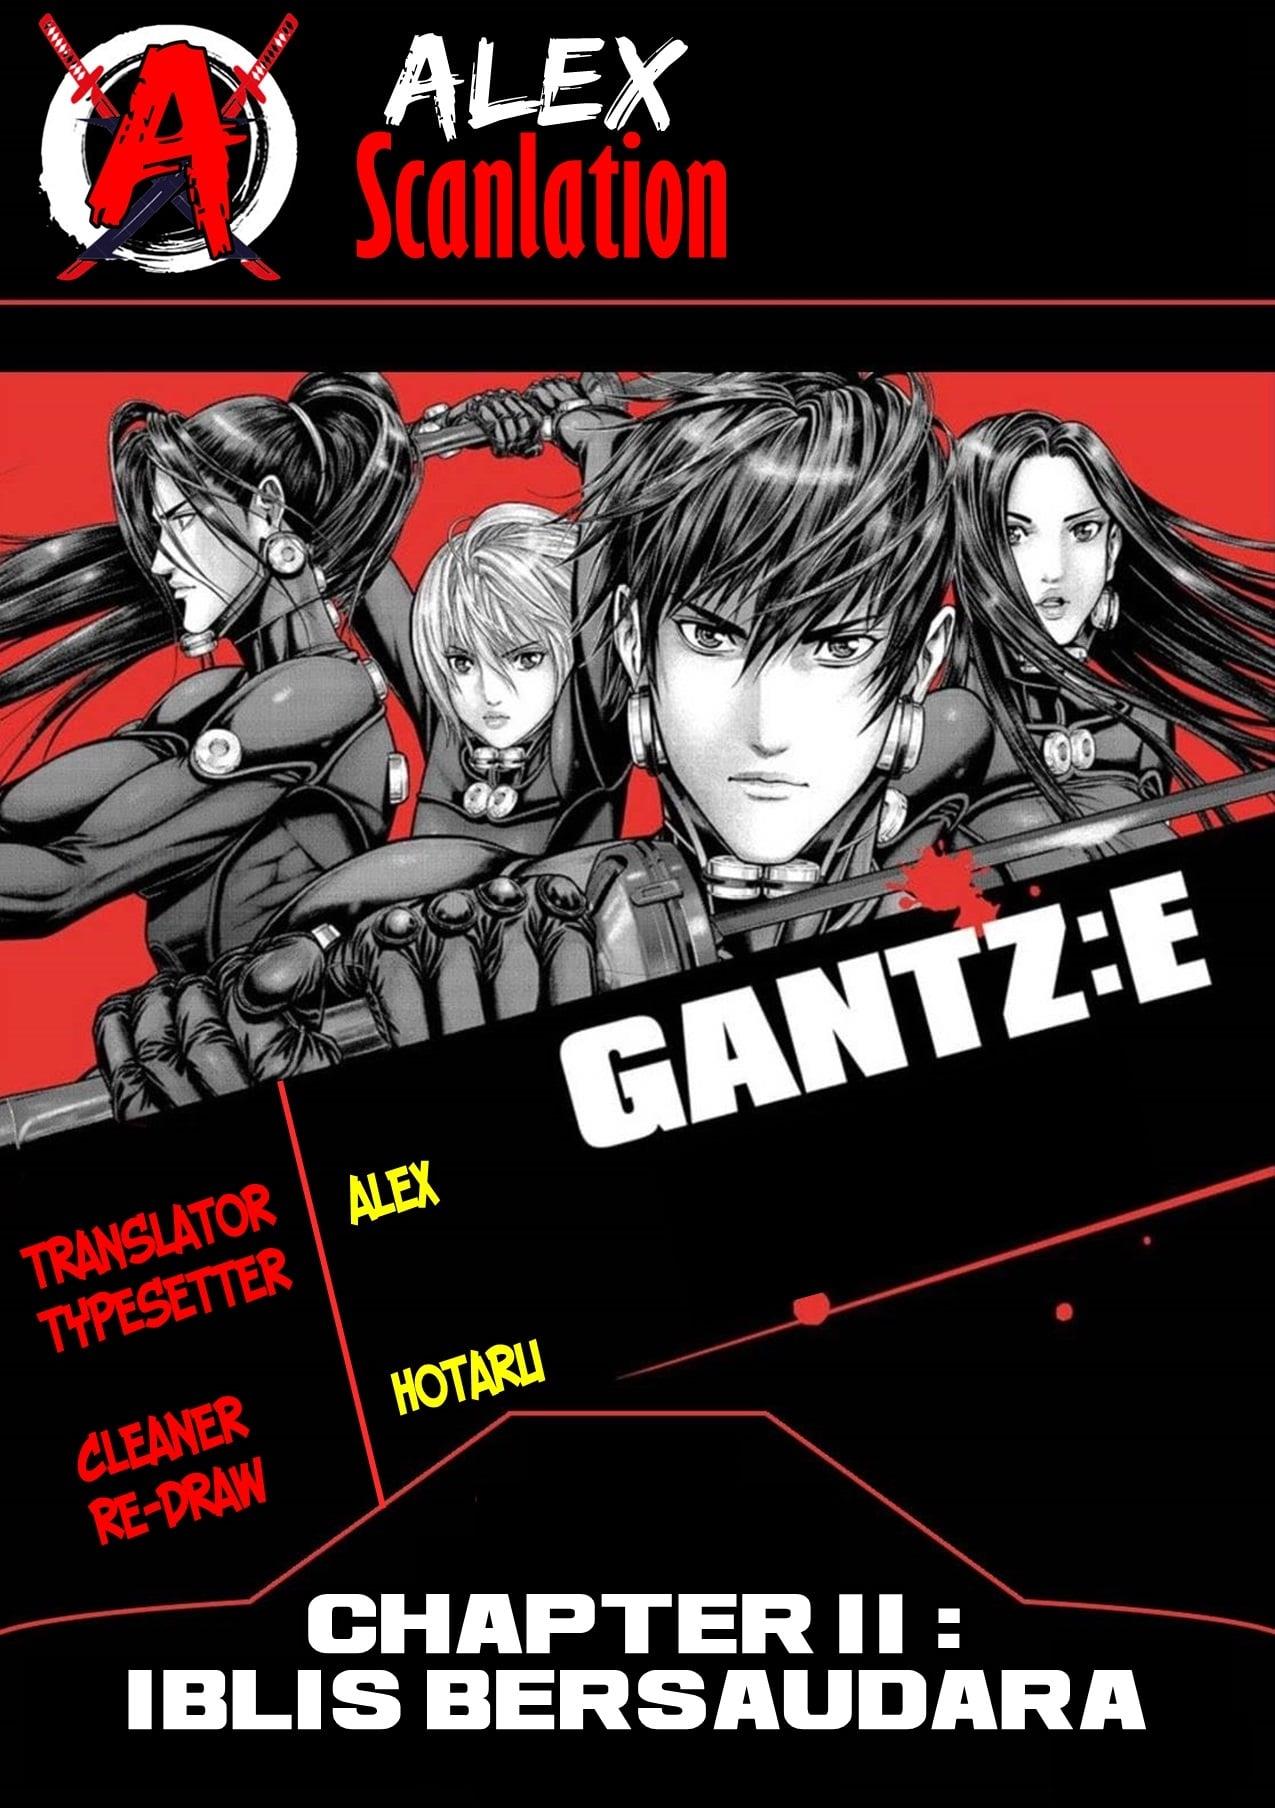 Gantz:E Chapter 11